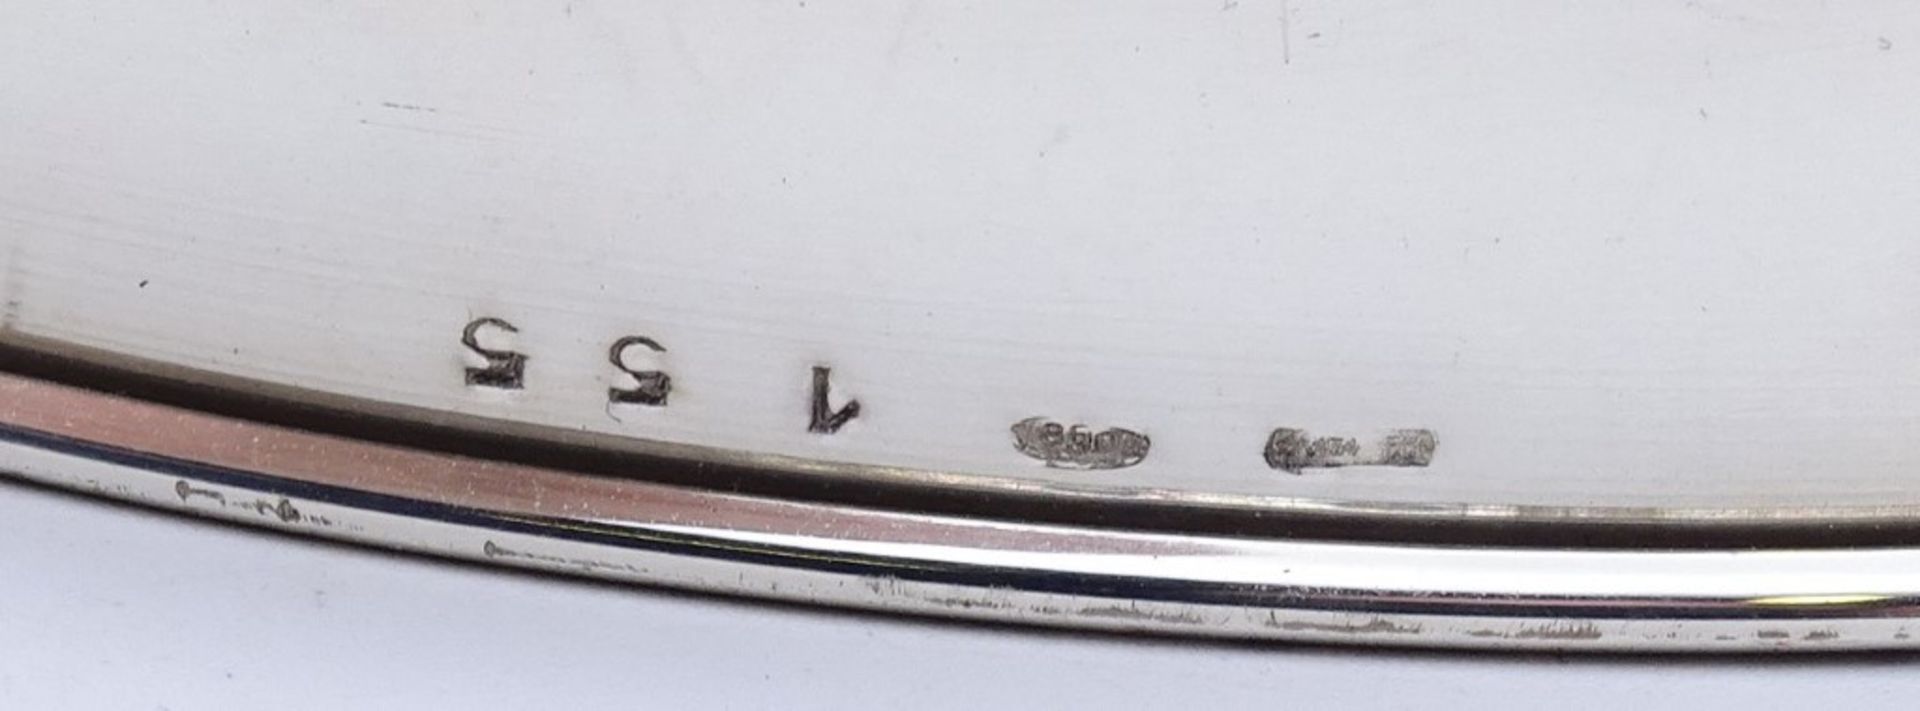 Lampenfuss in Silber 0.800, unbenutzt, Delle und etwas verbogen, ca. 202gr., H- 32 cm - Image 5 of 5